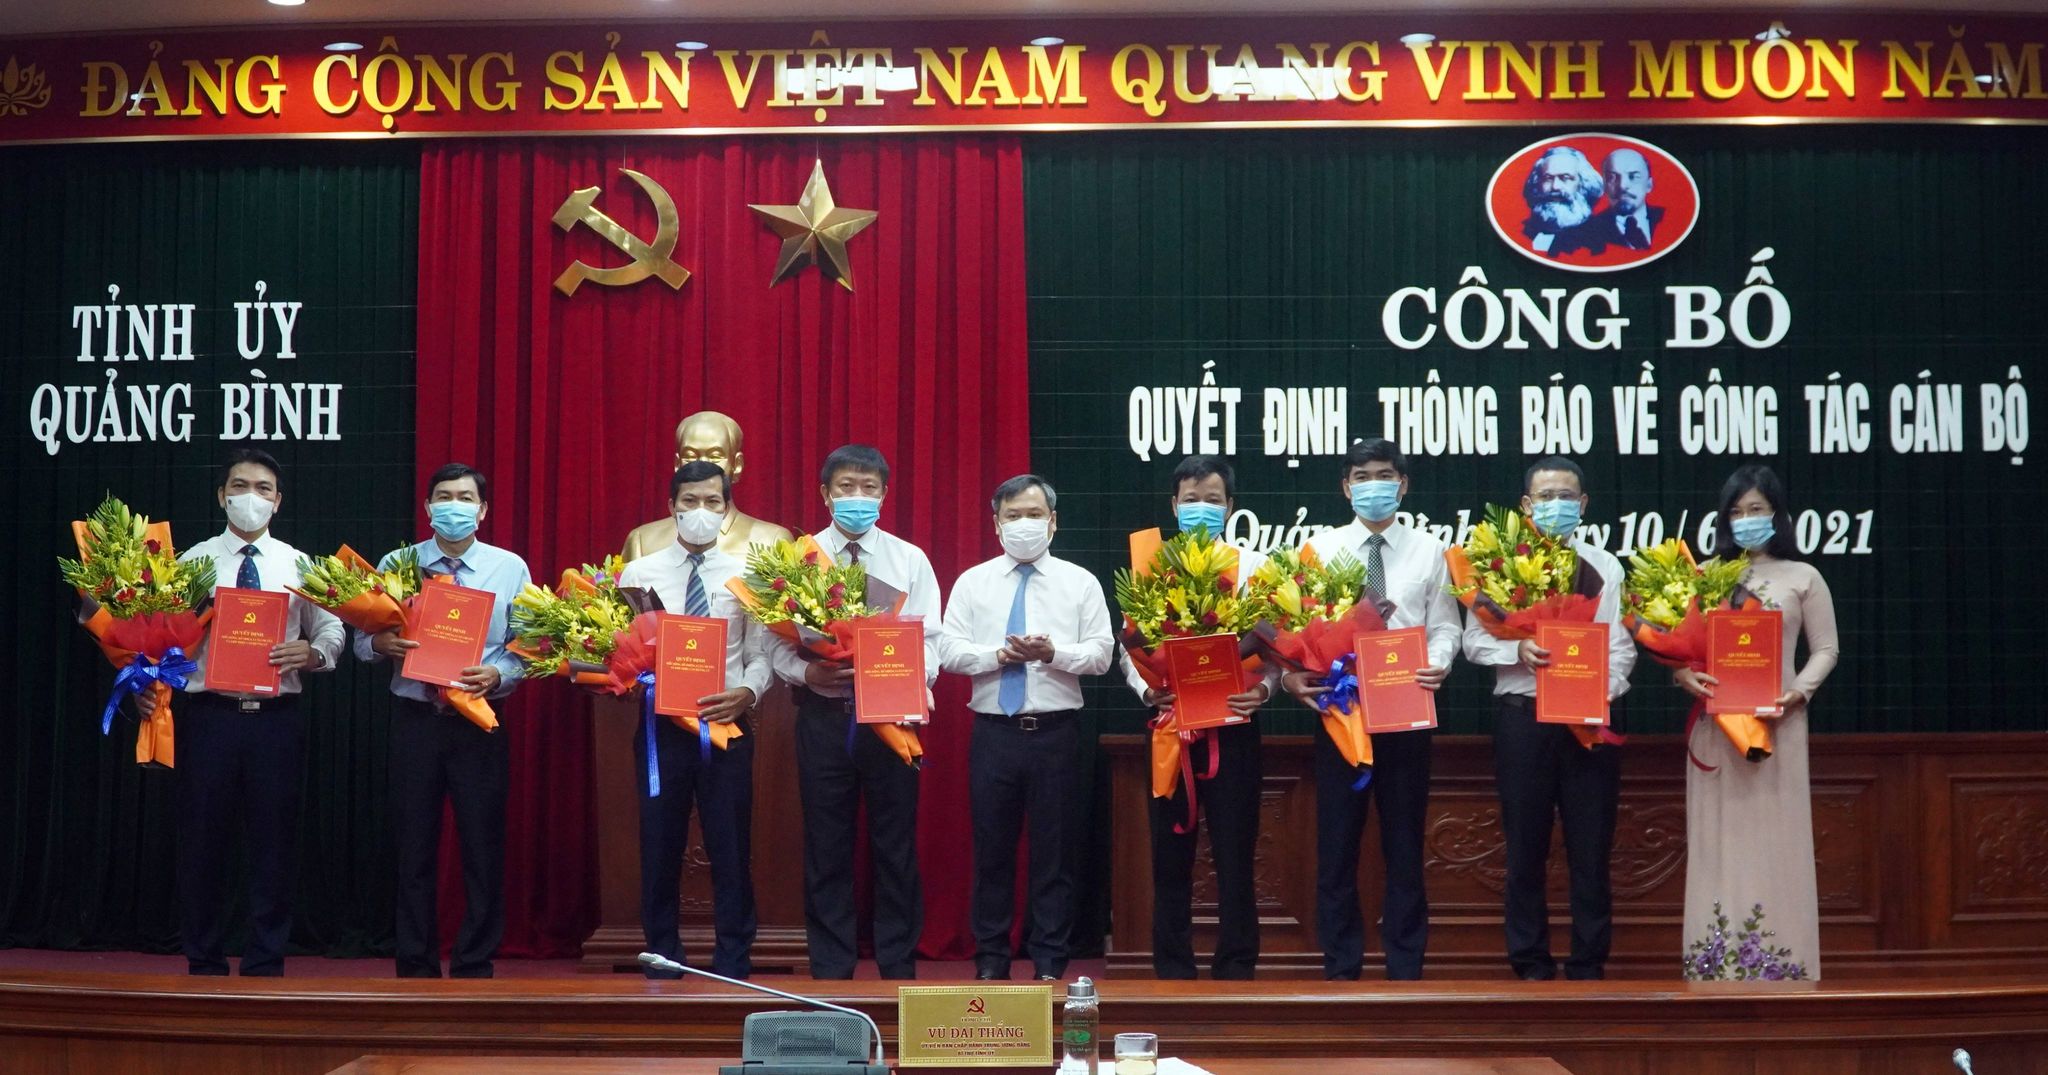 Bí thư Tỉnh ủy Quảng Bình Vũ Đại Thắng trao quyết định và tặng hoa chúc mừng các cán bộ được bổ nhiệm